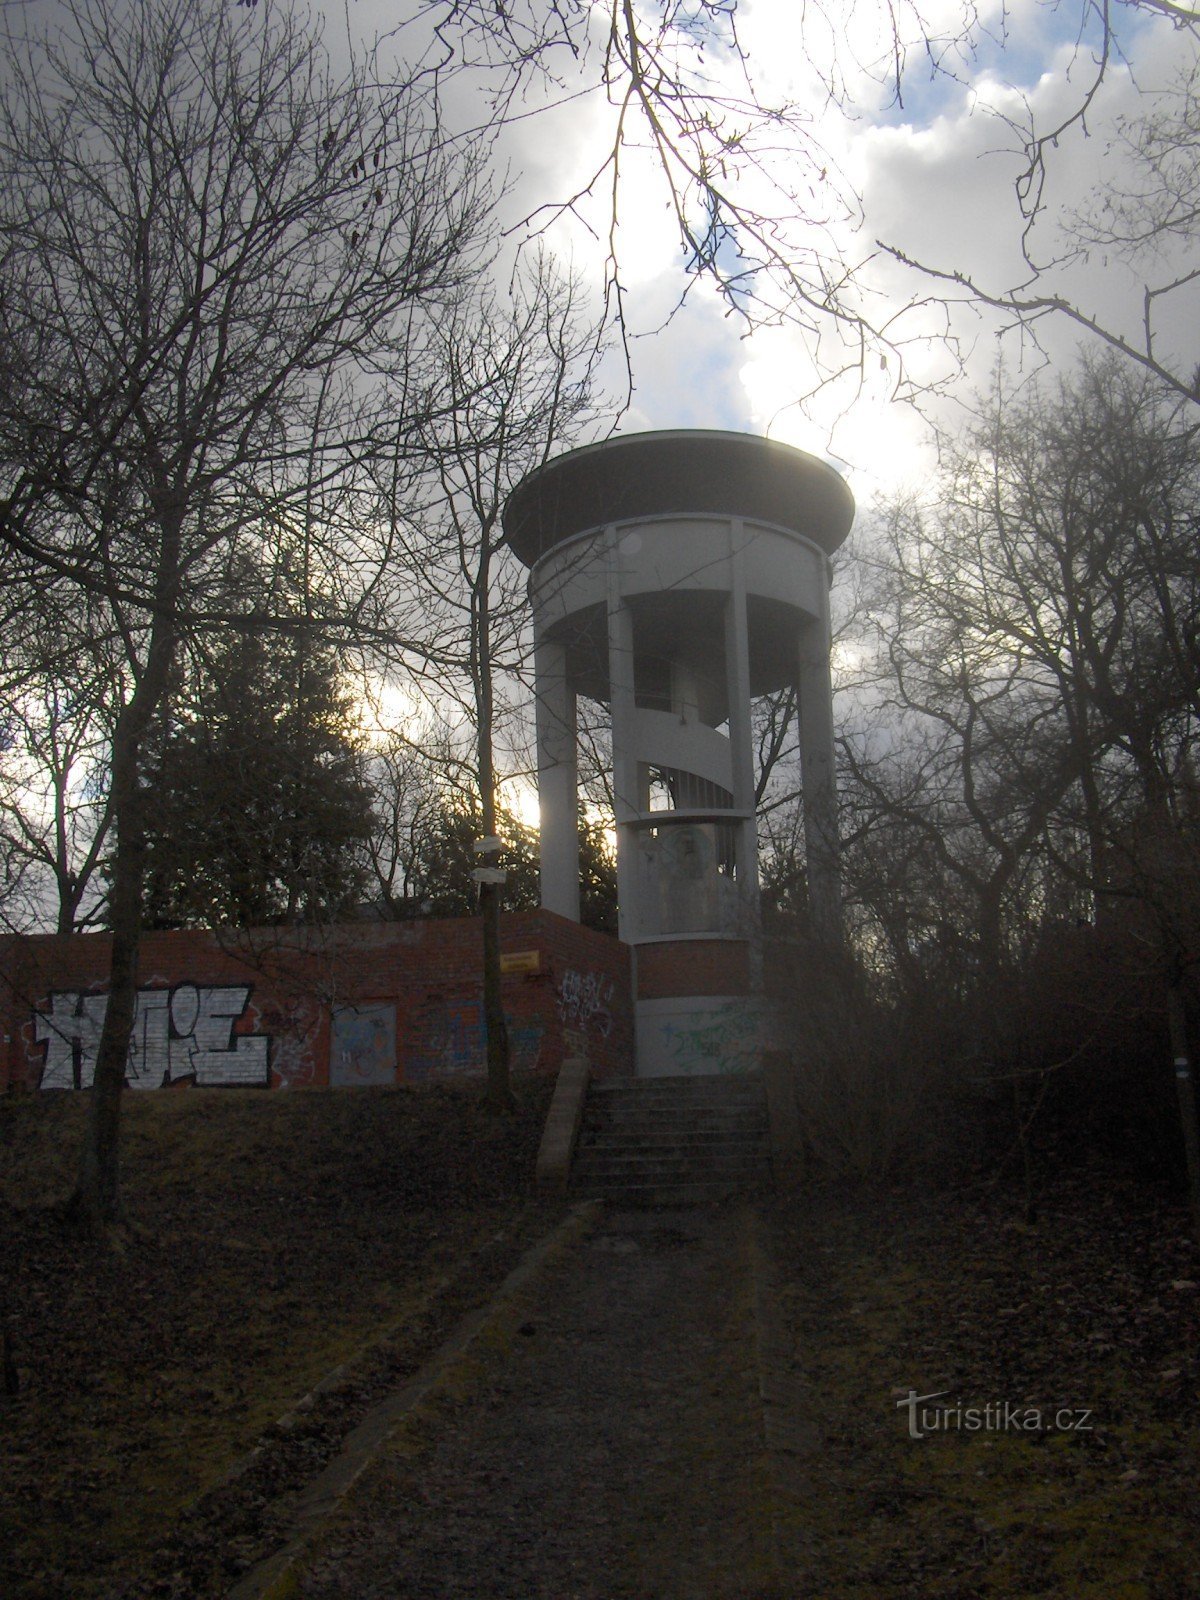 Torre de vigia de Kratochvíl